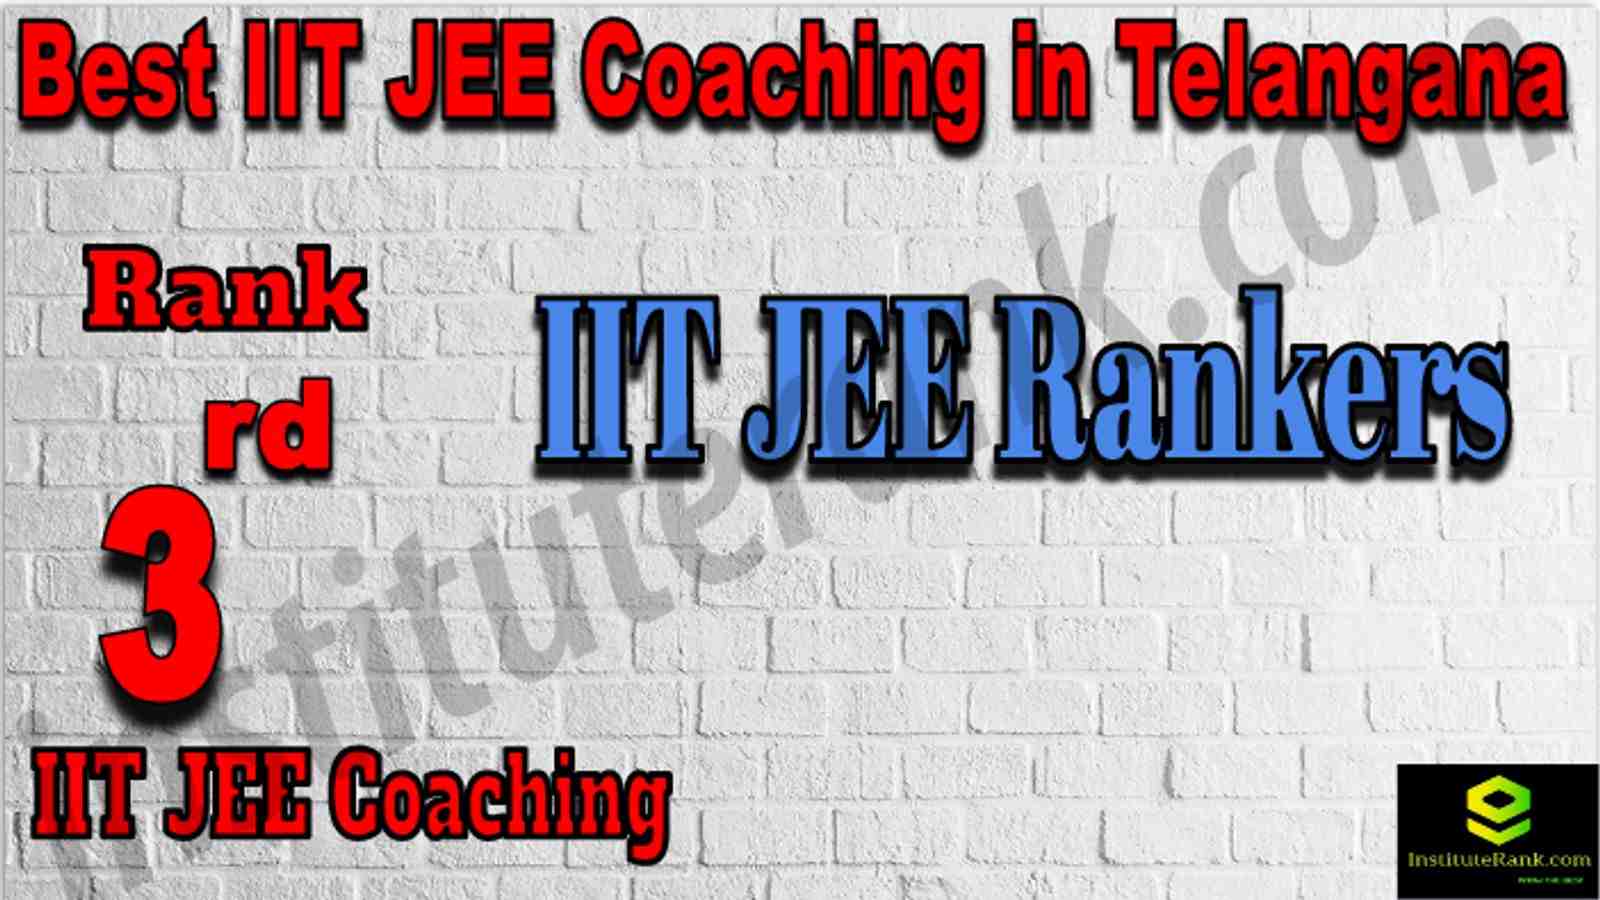 Rank 3rd Best IIT JEE Coaching in Telangana